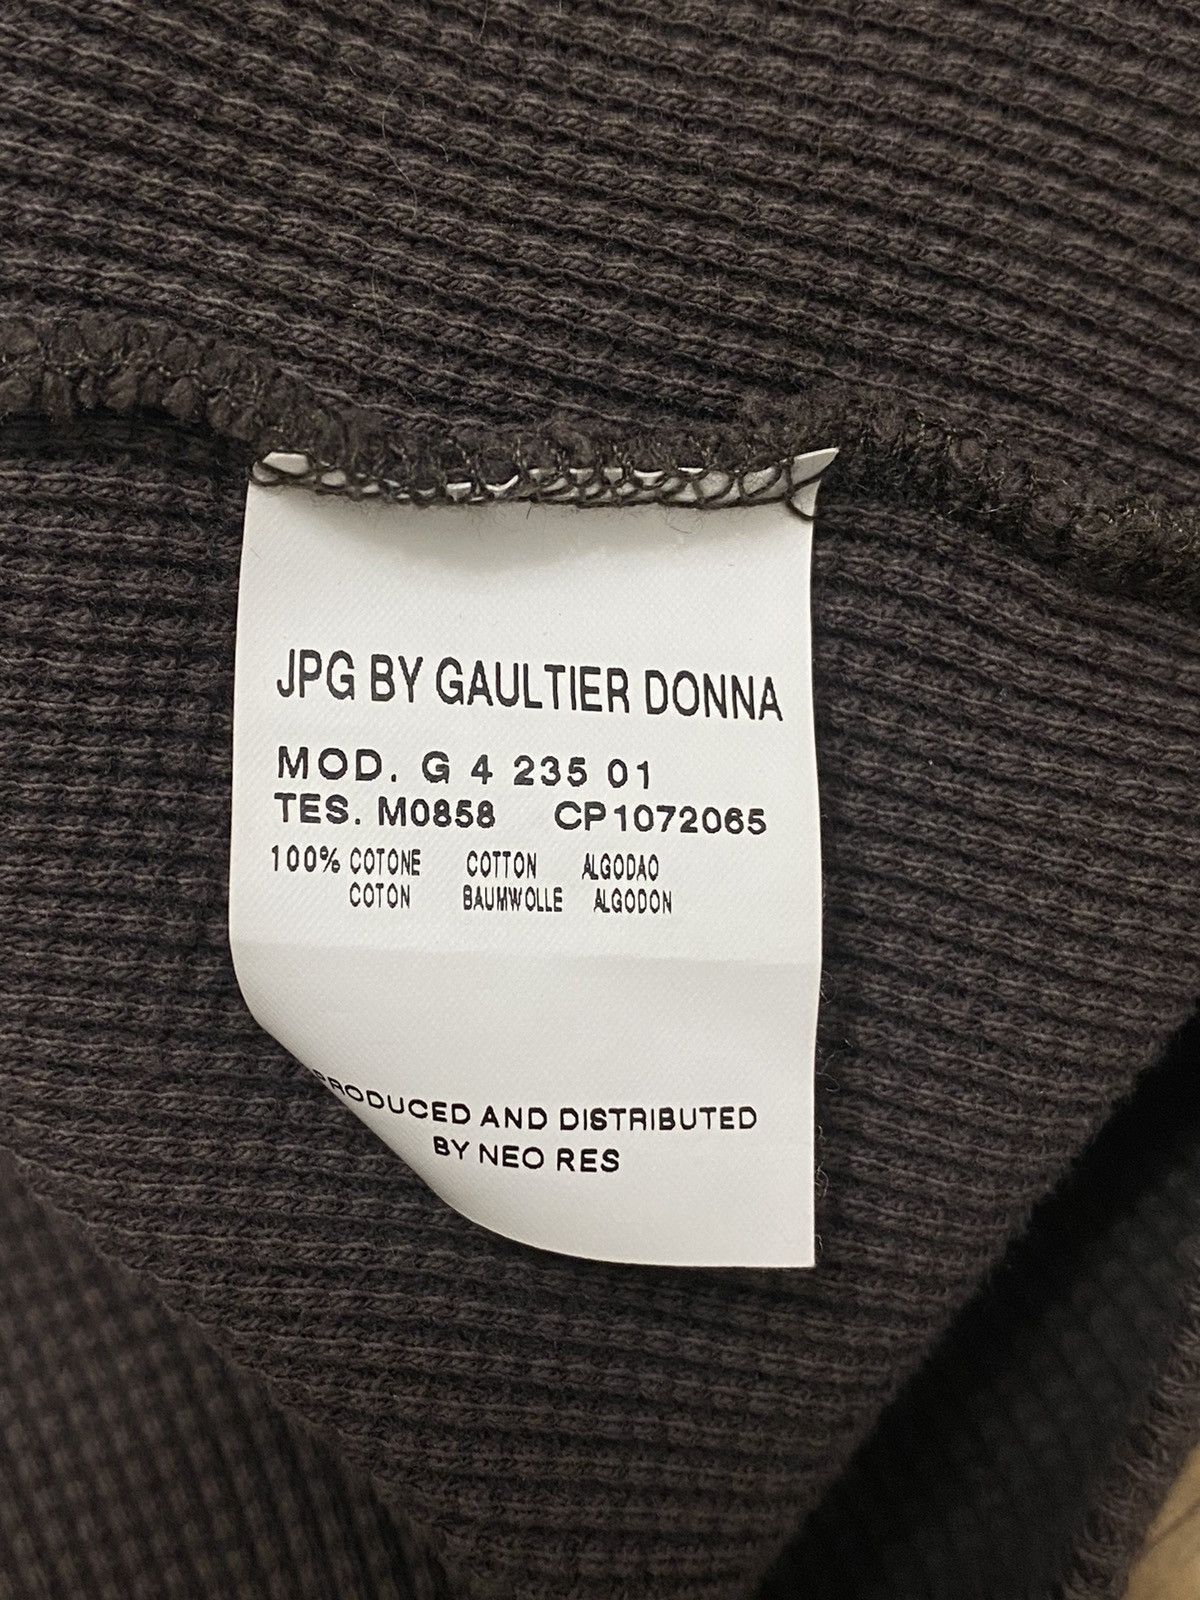 Jean Paul Gaultier JPG Men’s Knit Sweater Size US S / EU 44-46 / 1 - 8 Thumbnail